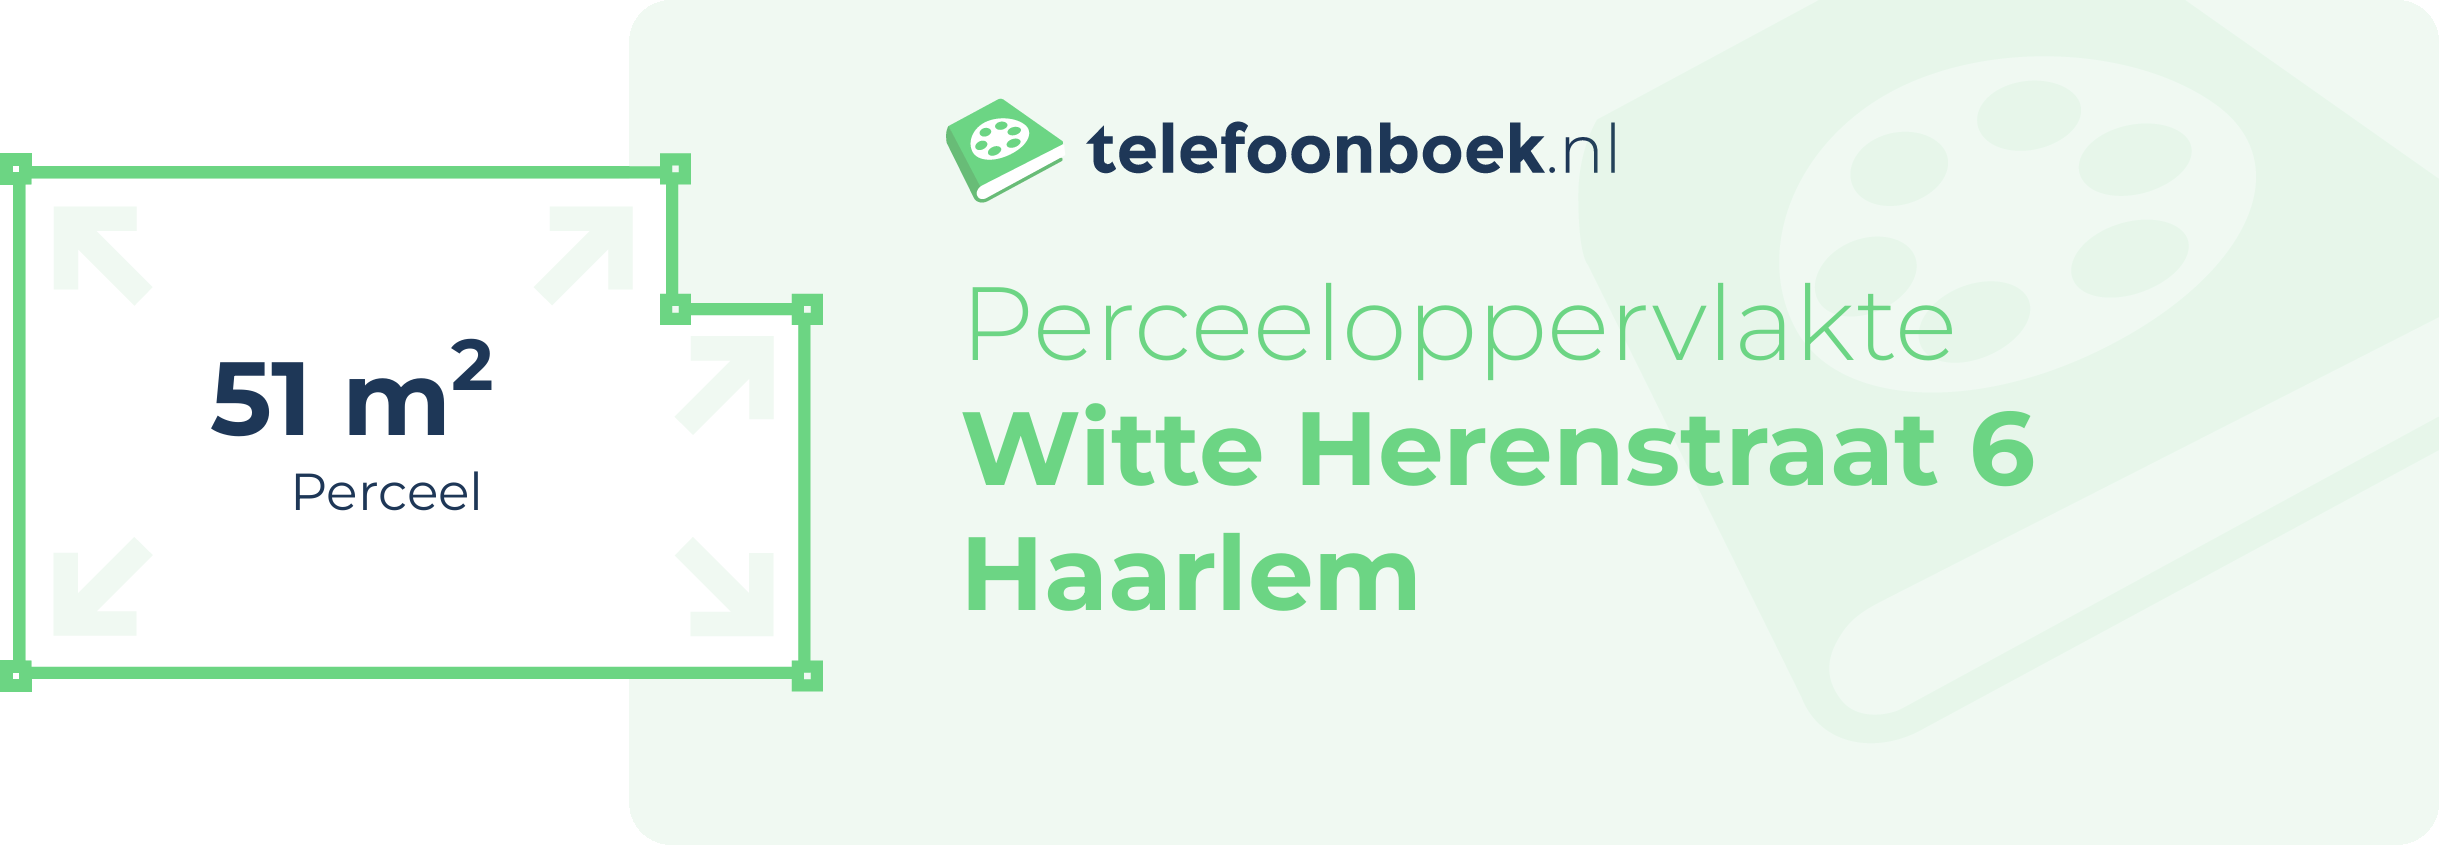 Perceeloppervlakte Witte Herenstraat 6 Haarlem